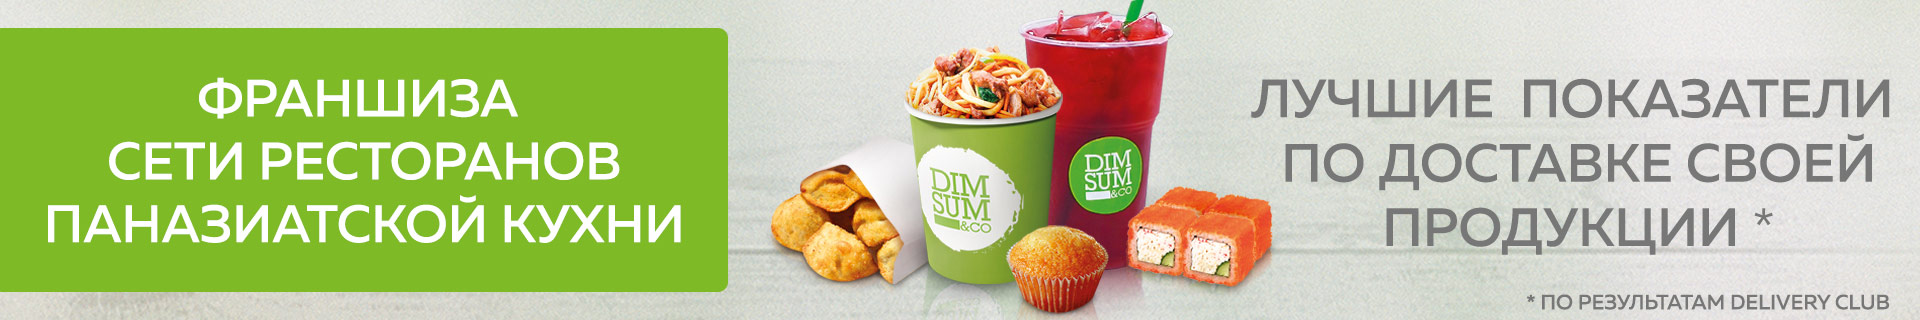 DimSum&Co — франшиза сети ресторанов быстрого обслуживания